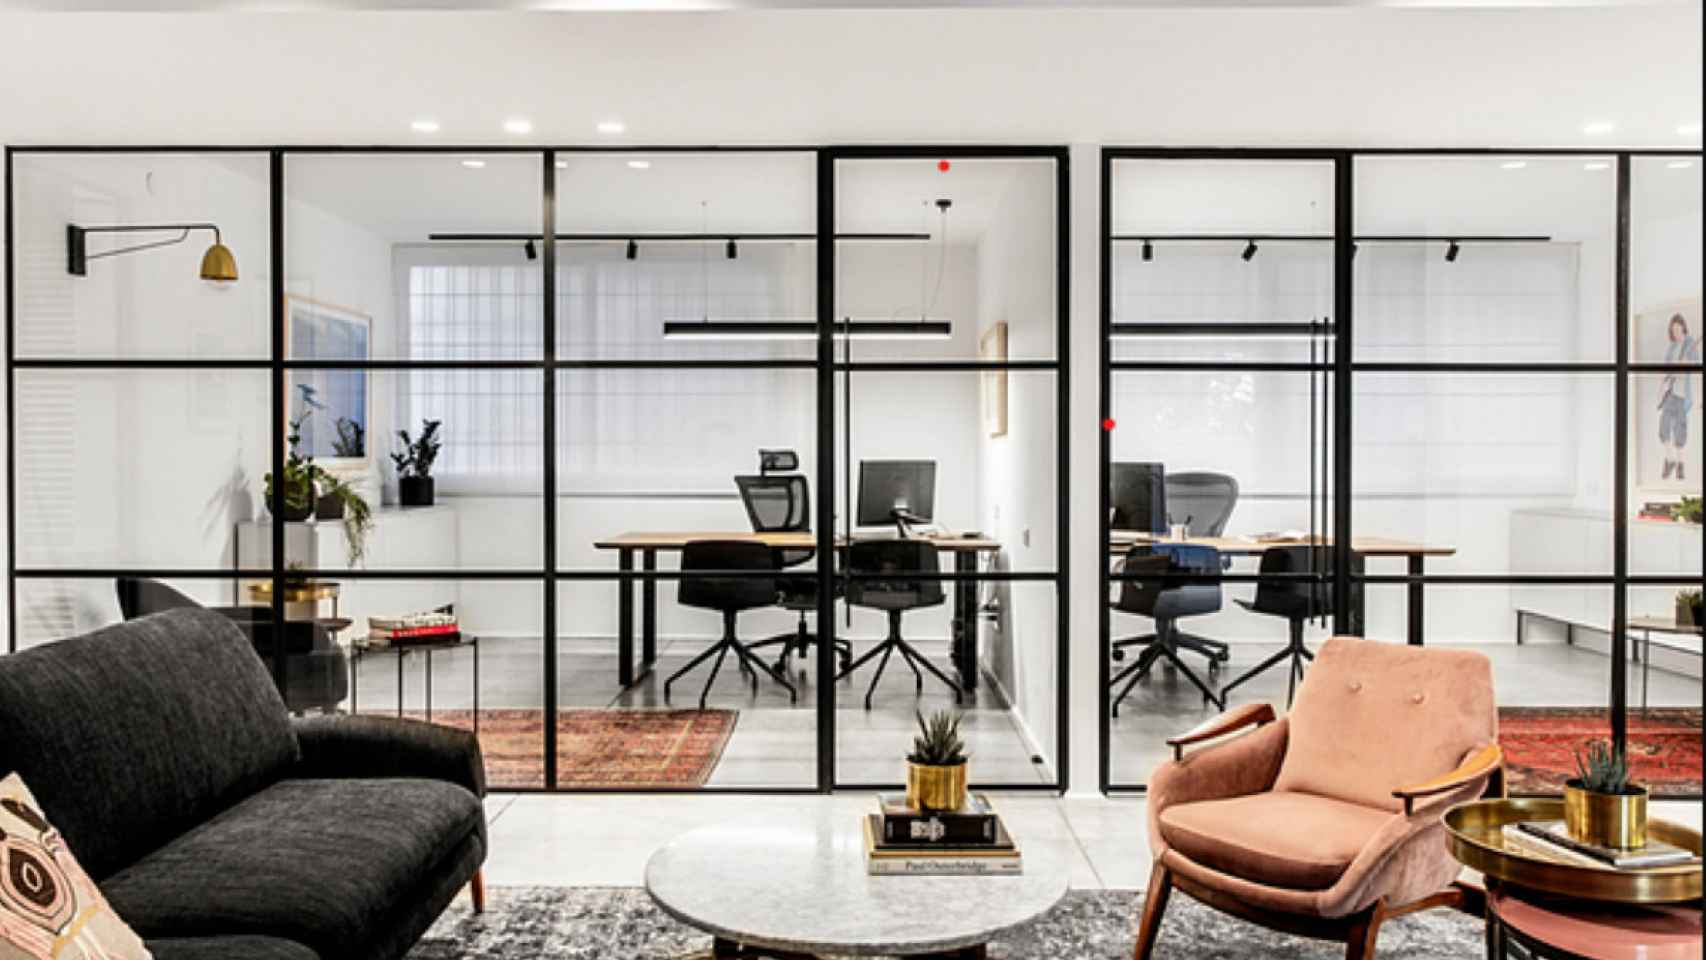 Psquared diseña oficinas hibridas con las comodidades del hogar / PSQUARED